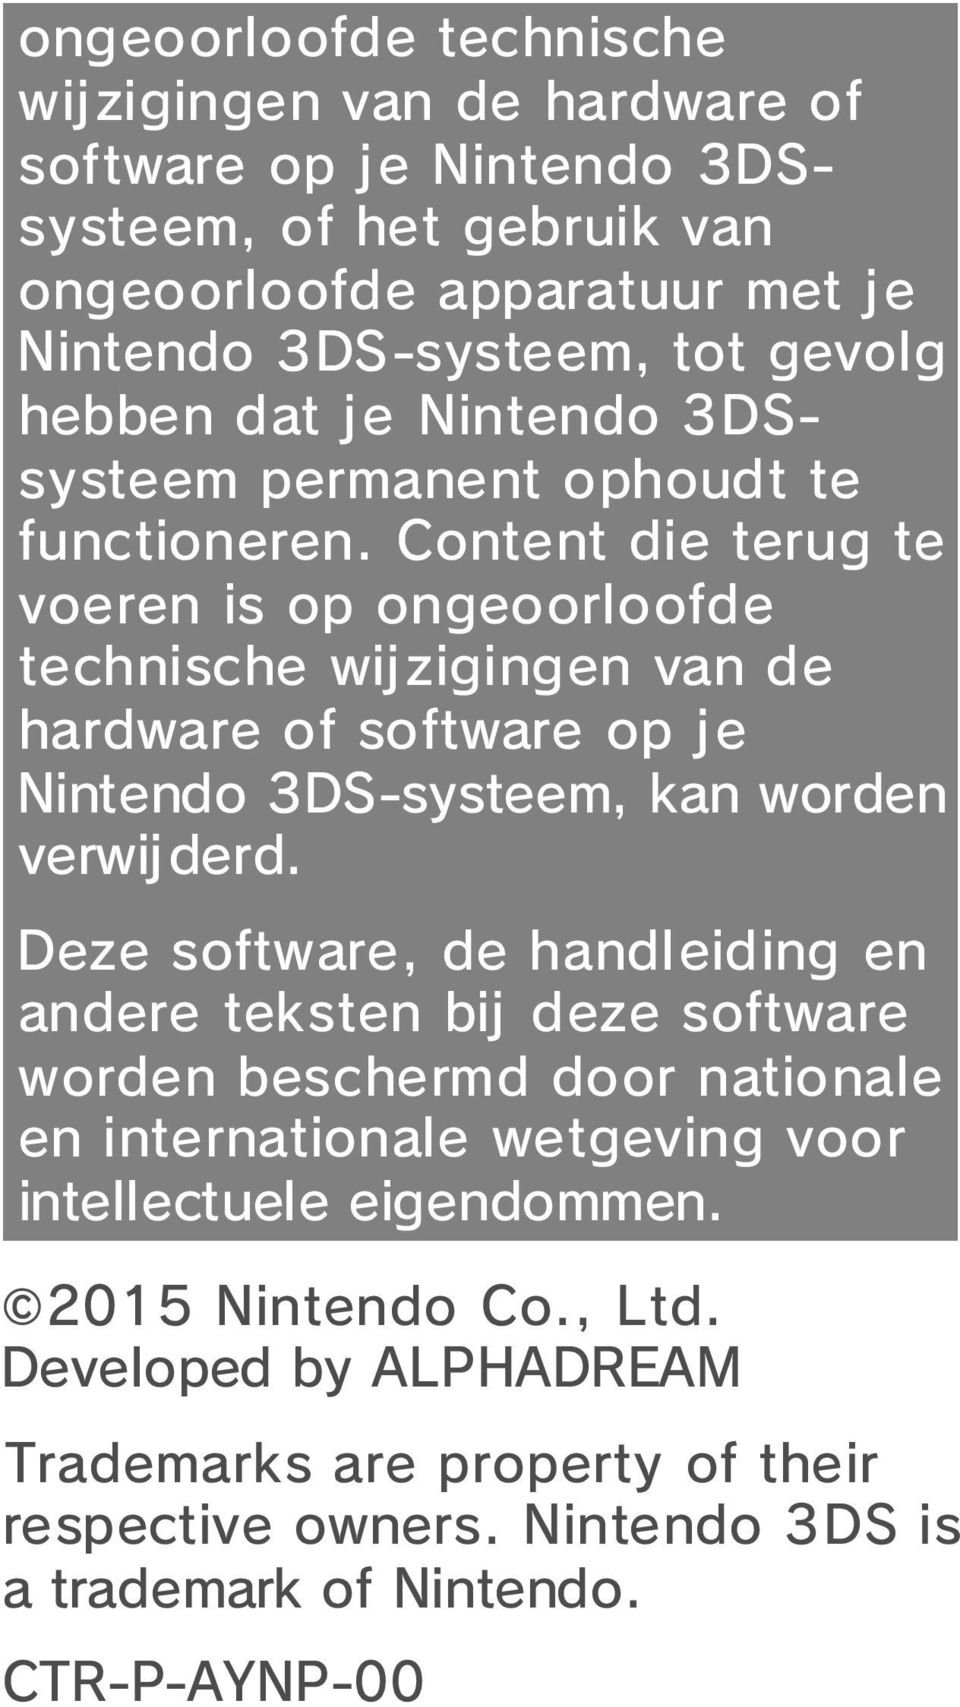 Content die terug te voeren is op ongeoorloofde technische wijzigingen van de hardware of software op je Nintendo 3DS-systeem, kan worden verwij derd.